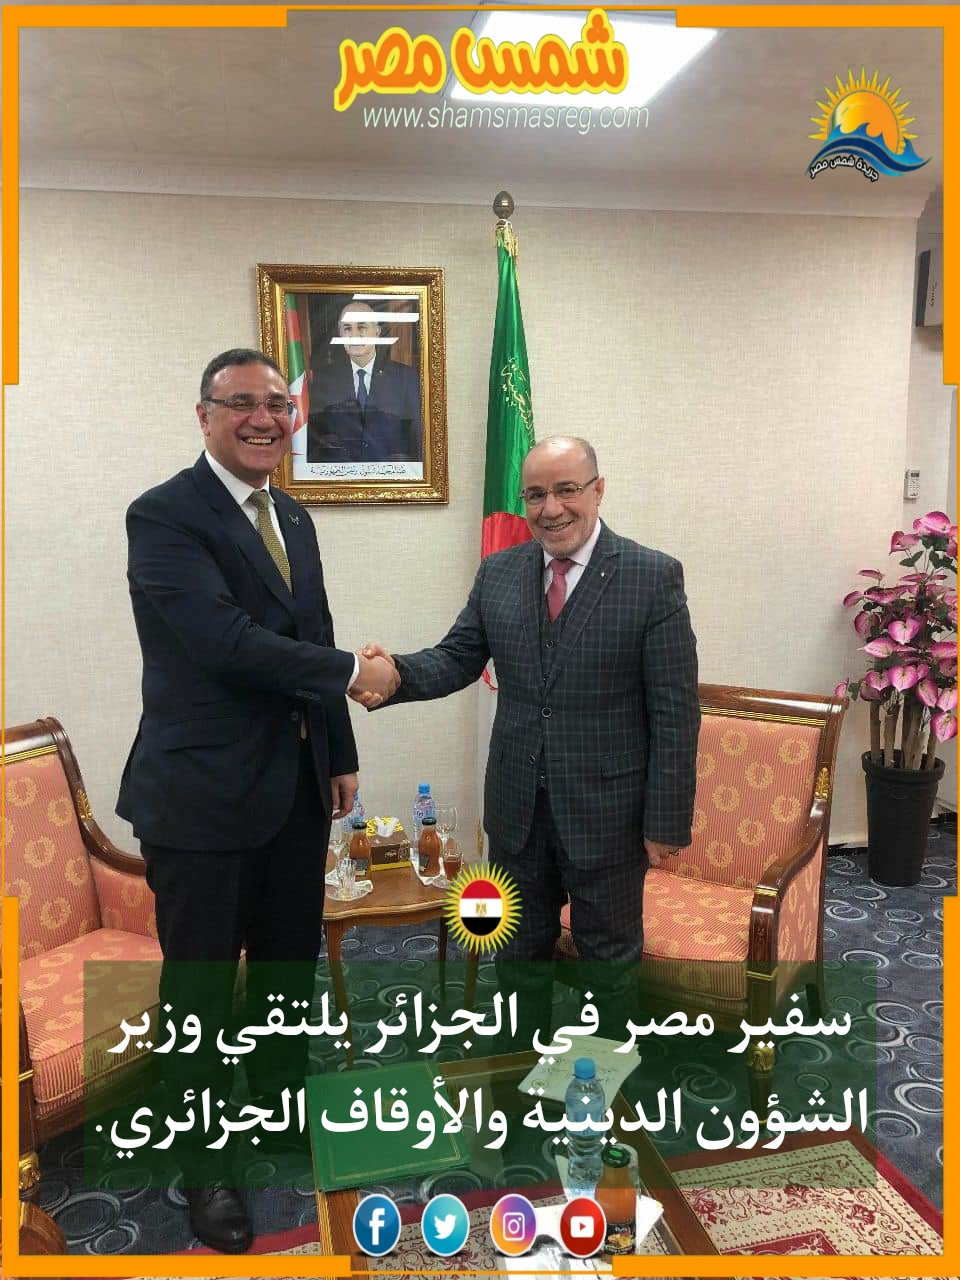 |شمس مصر|.. سفير مصر في الجزائر يلتقي وزير الشئون الدينية والأوقاف الجزائري